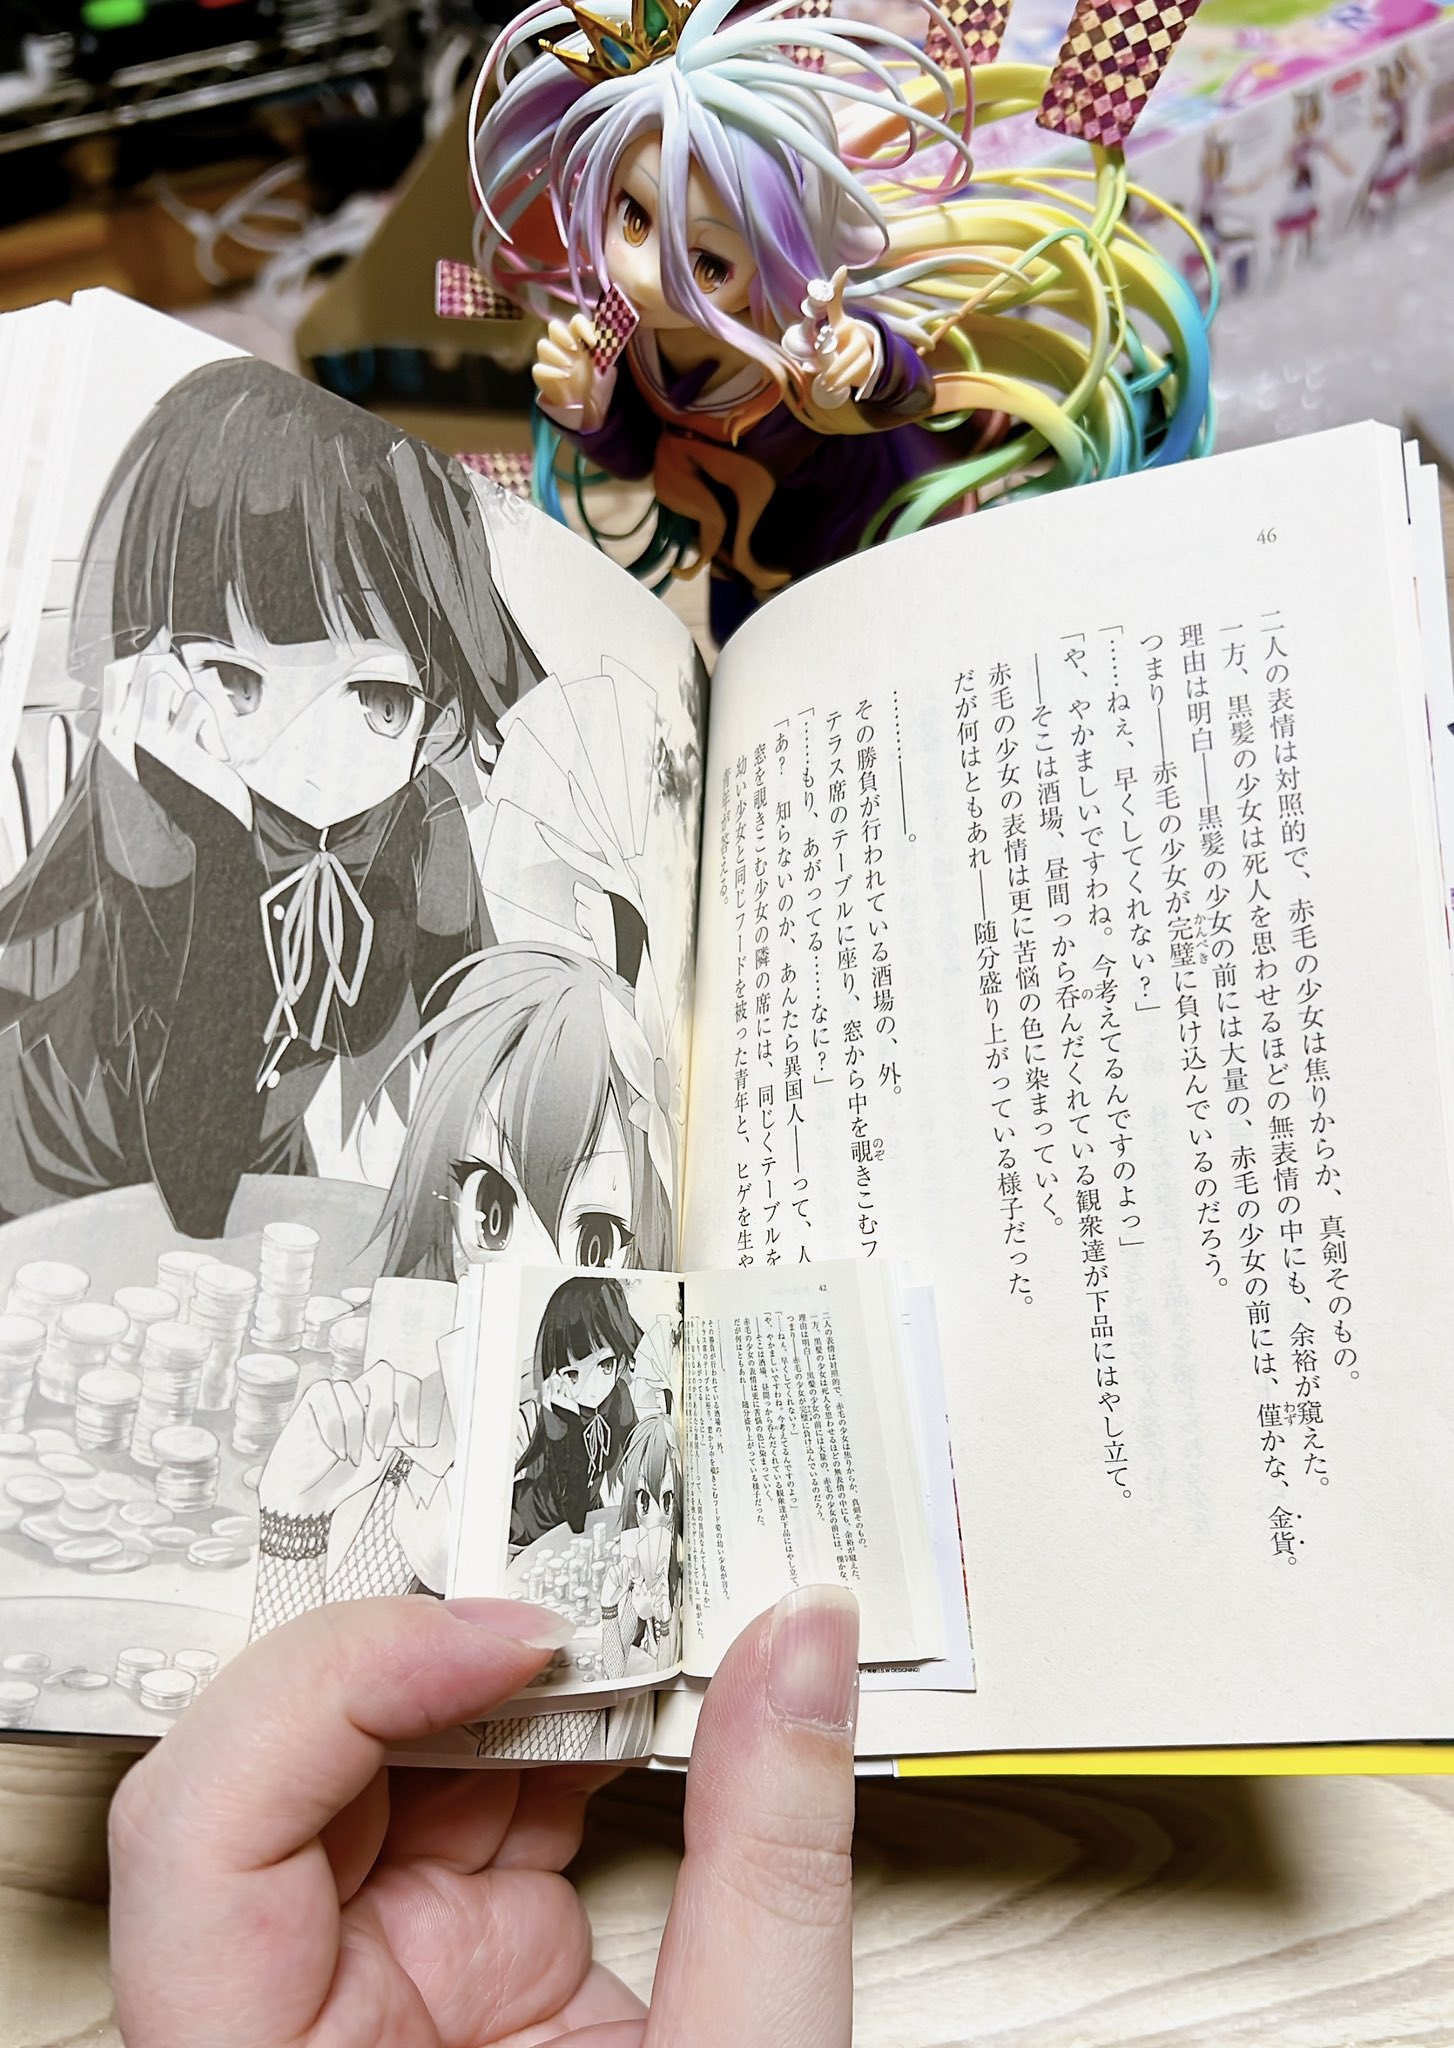 比轻小说还“轻”的小说 日本网友从扭蛋中开出微缩版《游戏人生》第一卷全本